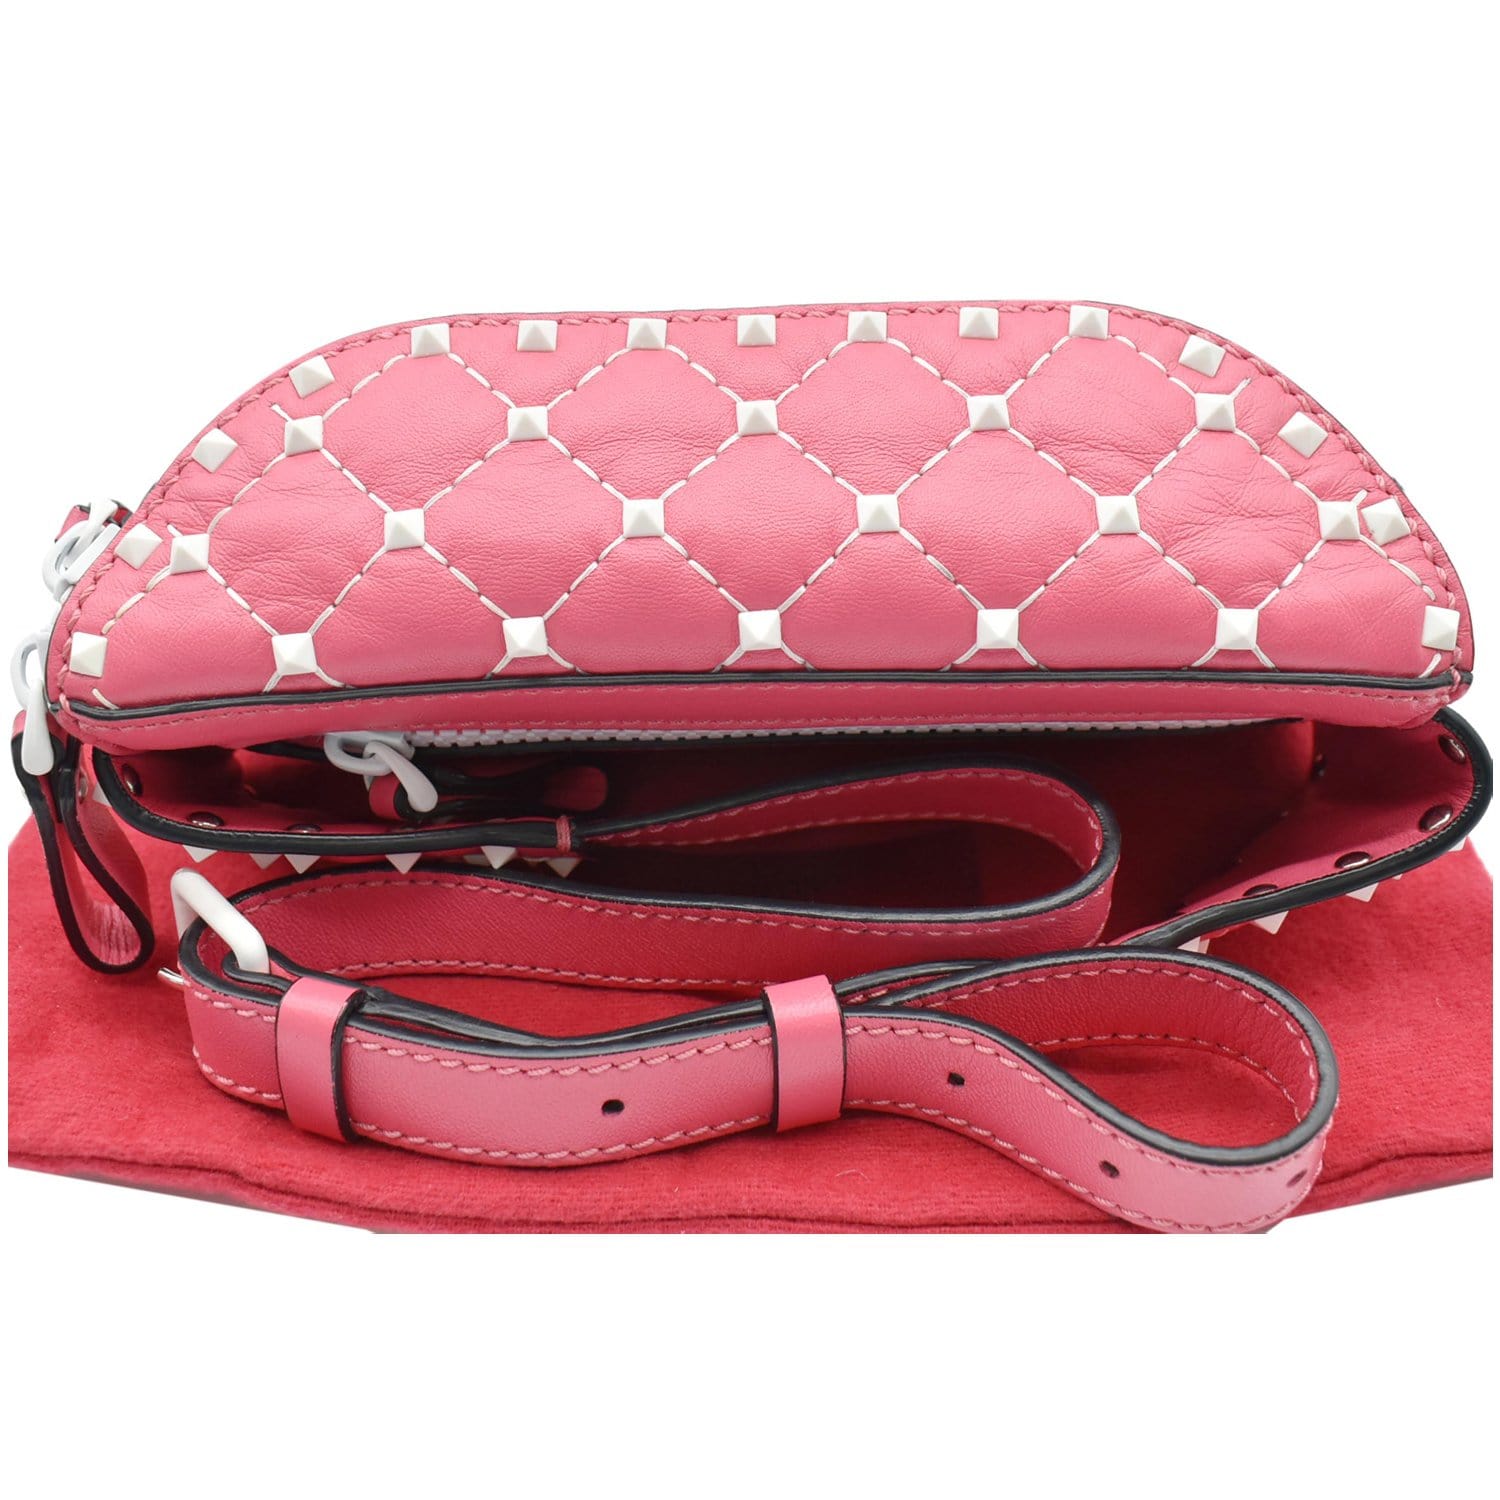 Valentino Rockstud Camera Bag (Pink)